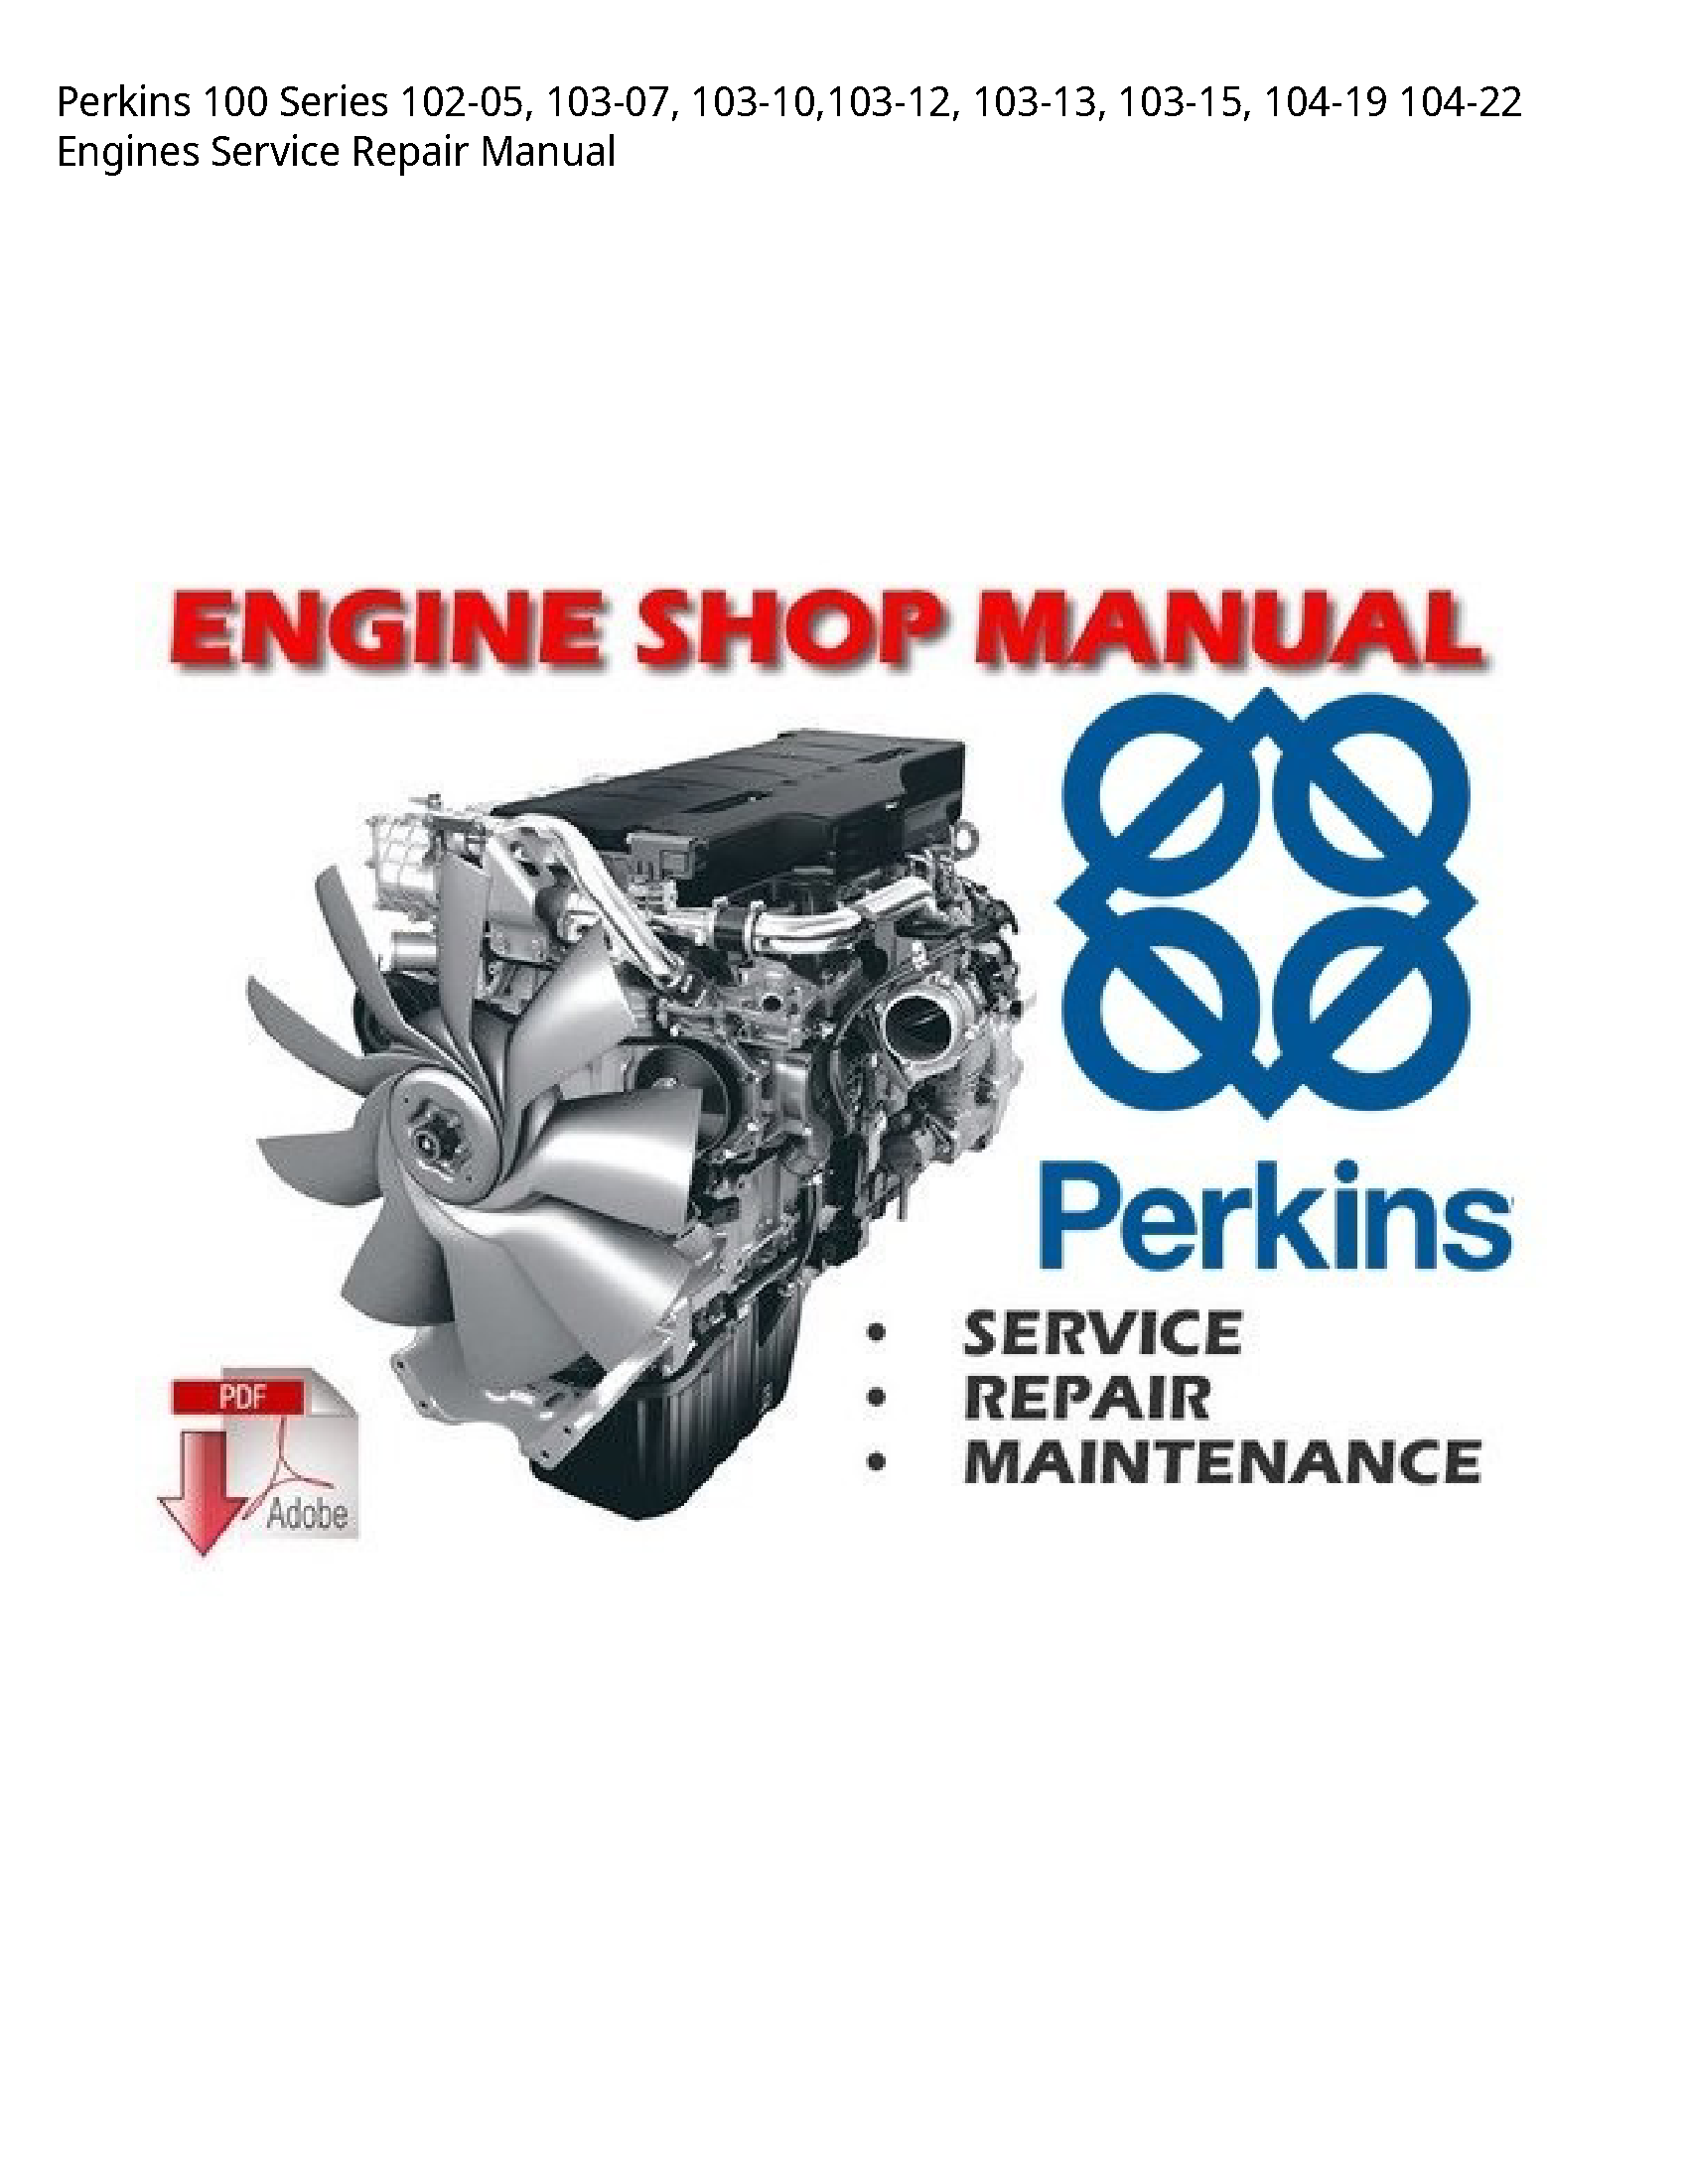 Perkins 100 Series Engines manual